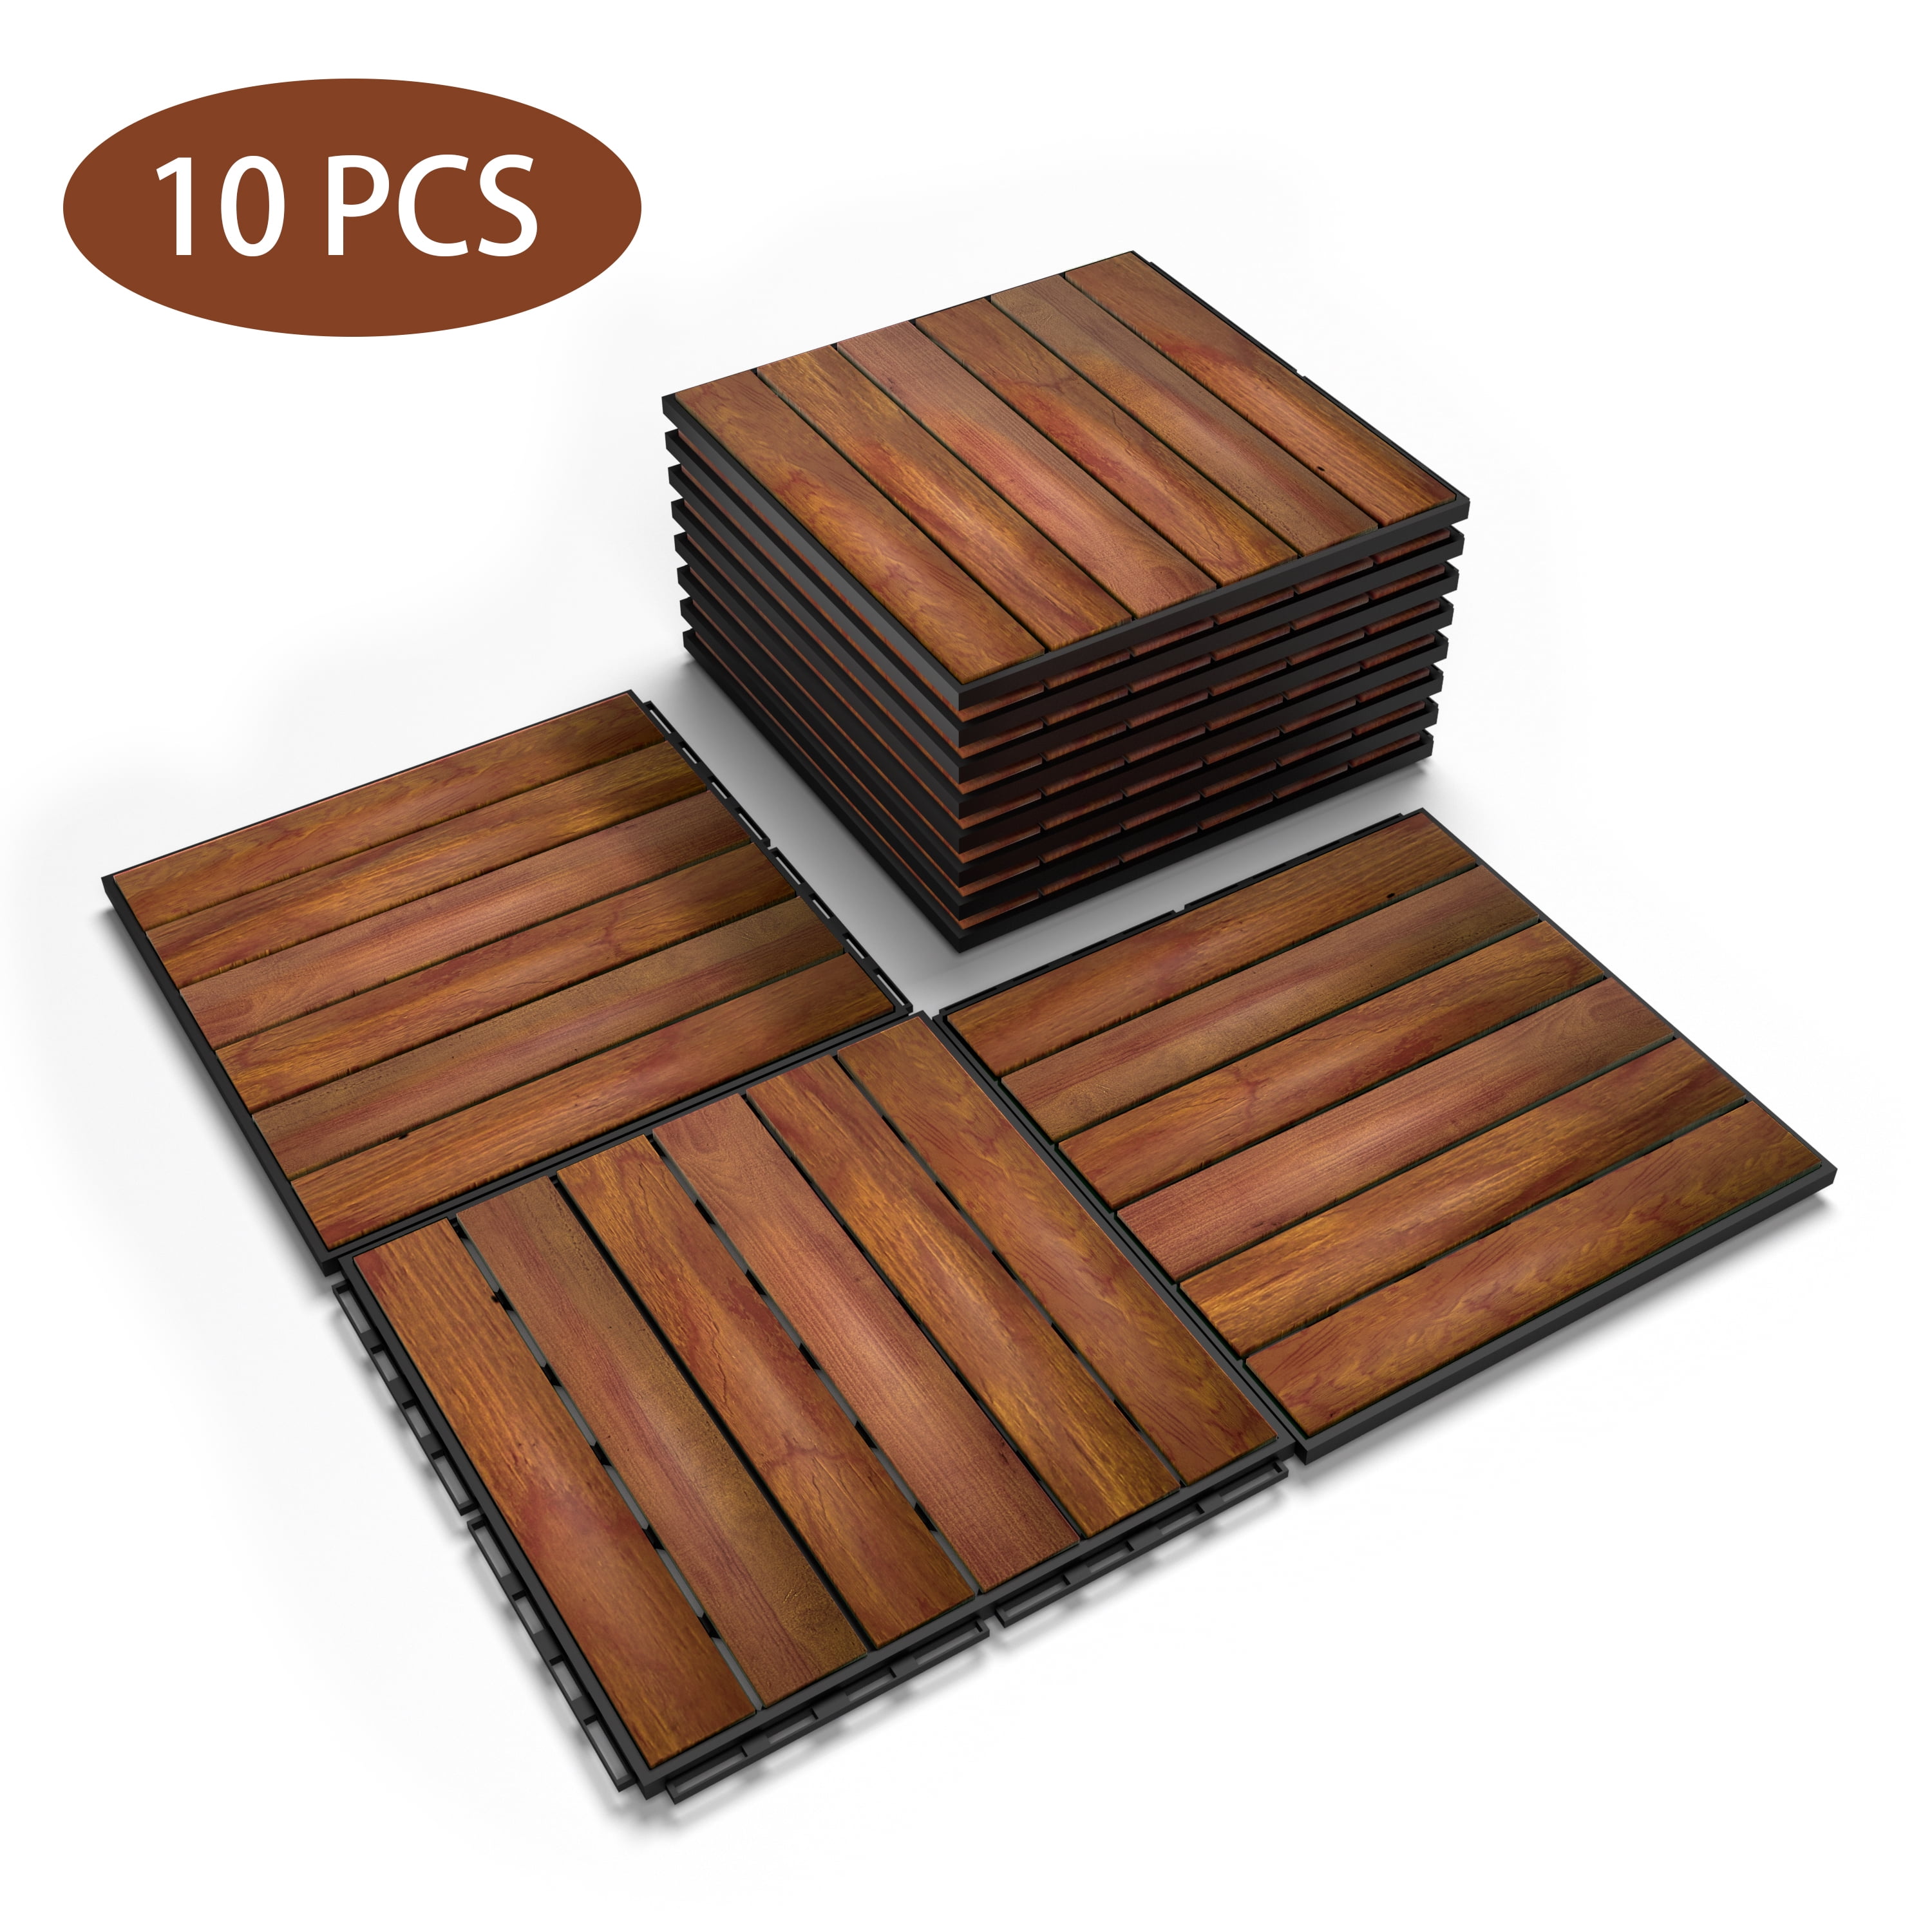 Patio Deck Interlocking Floor Tiles Wood Outdoor Home Decor Set of 10 pieces 